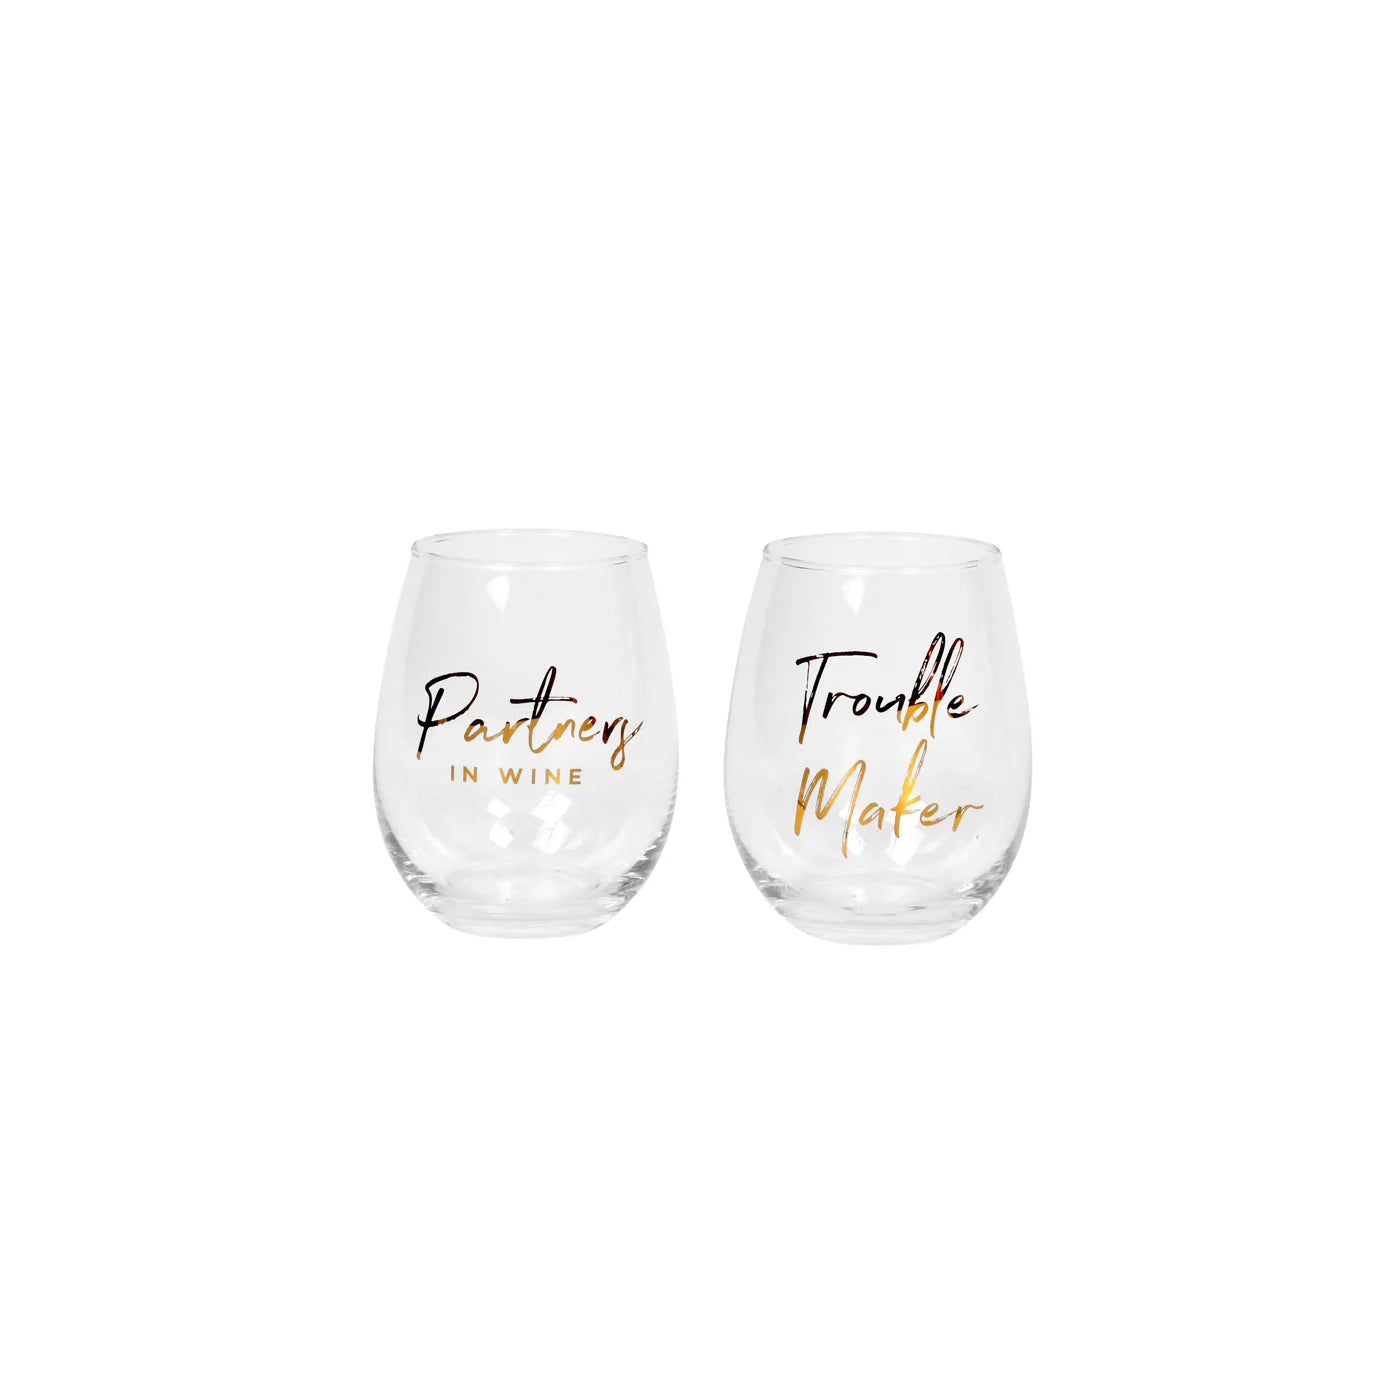 Partners In Wine/Trouble Maker Wine Glass Set